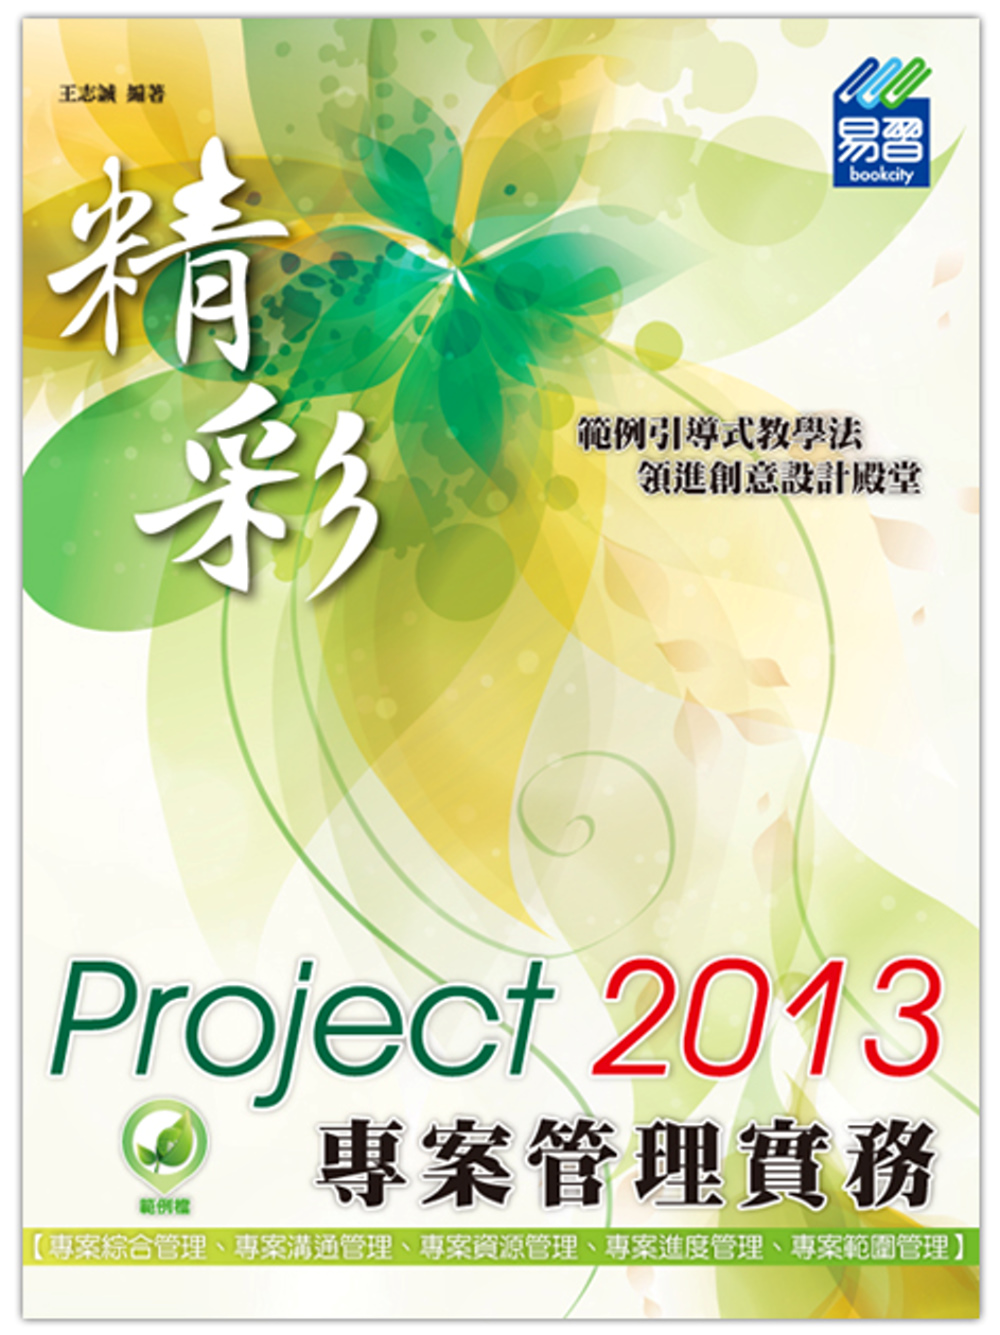 精彩 Project 2013 專案管理實務(附綠色範例檔)